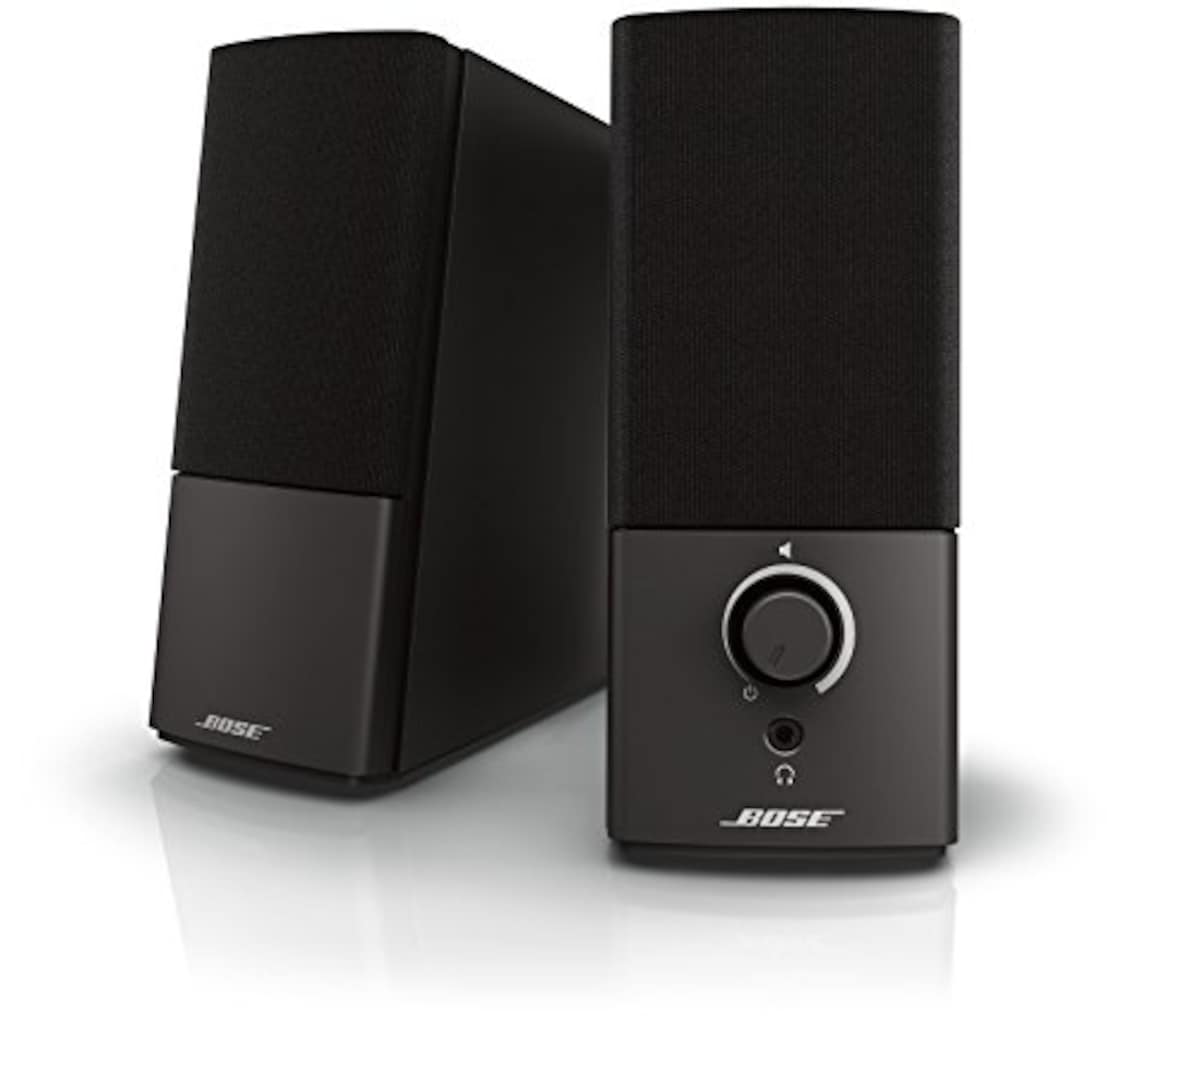 Companion 2 Series III multimedia speaker system